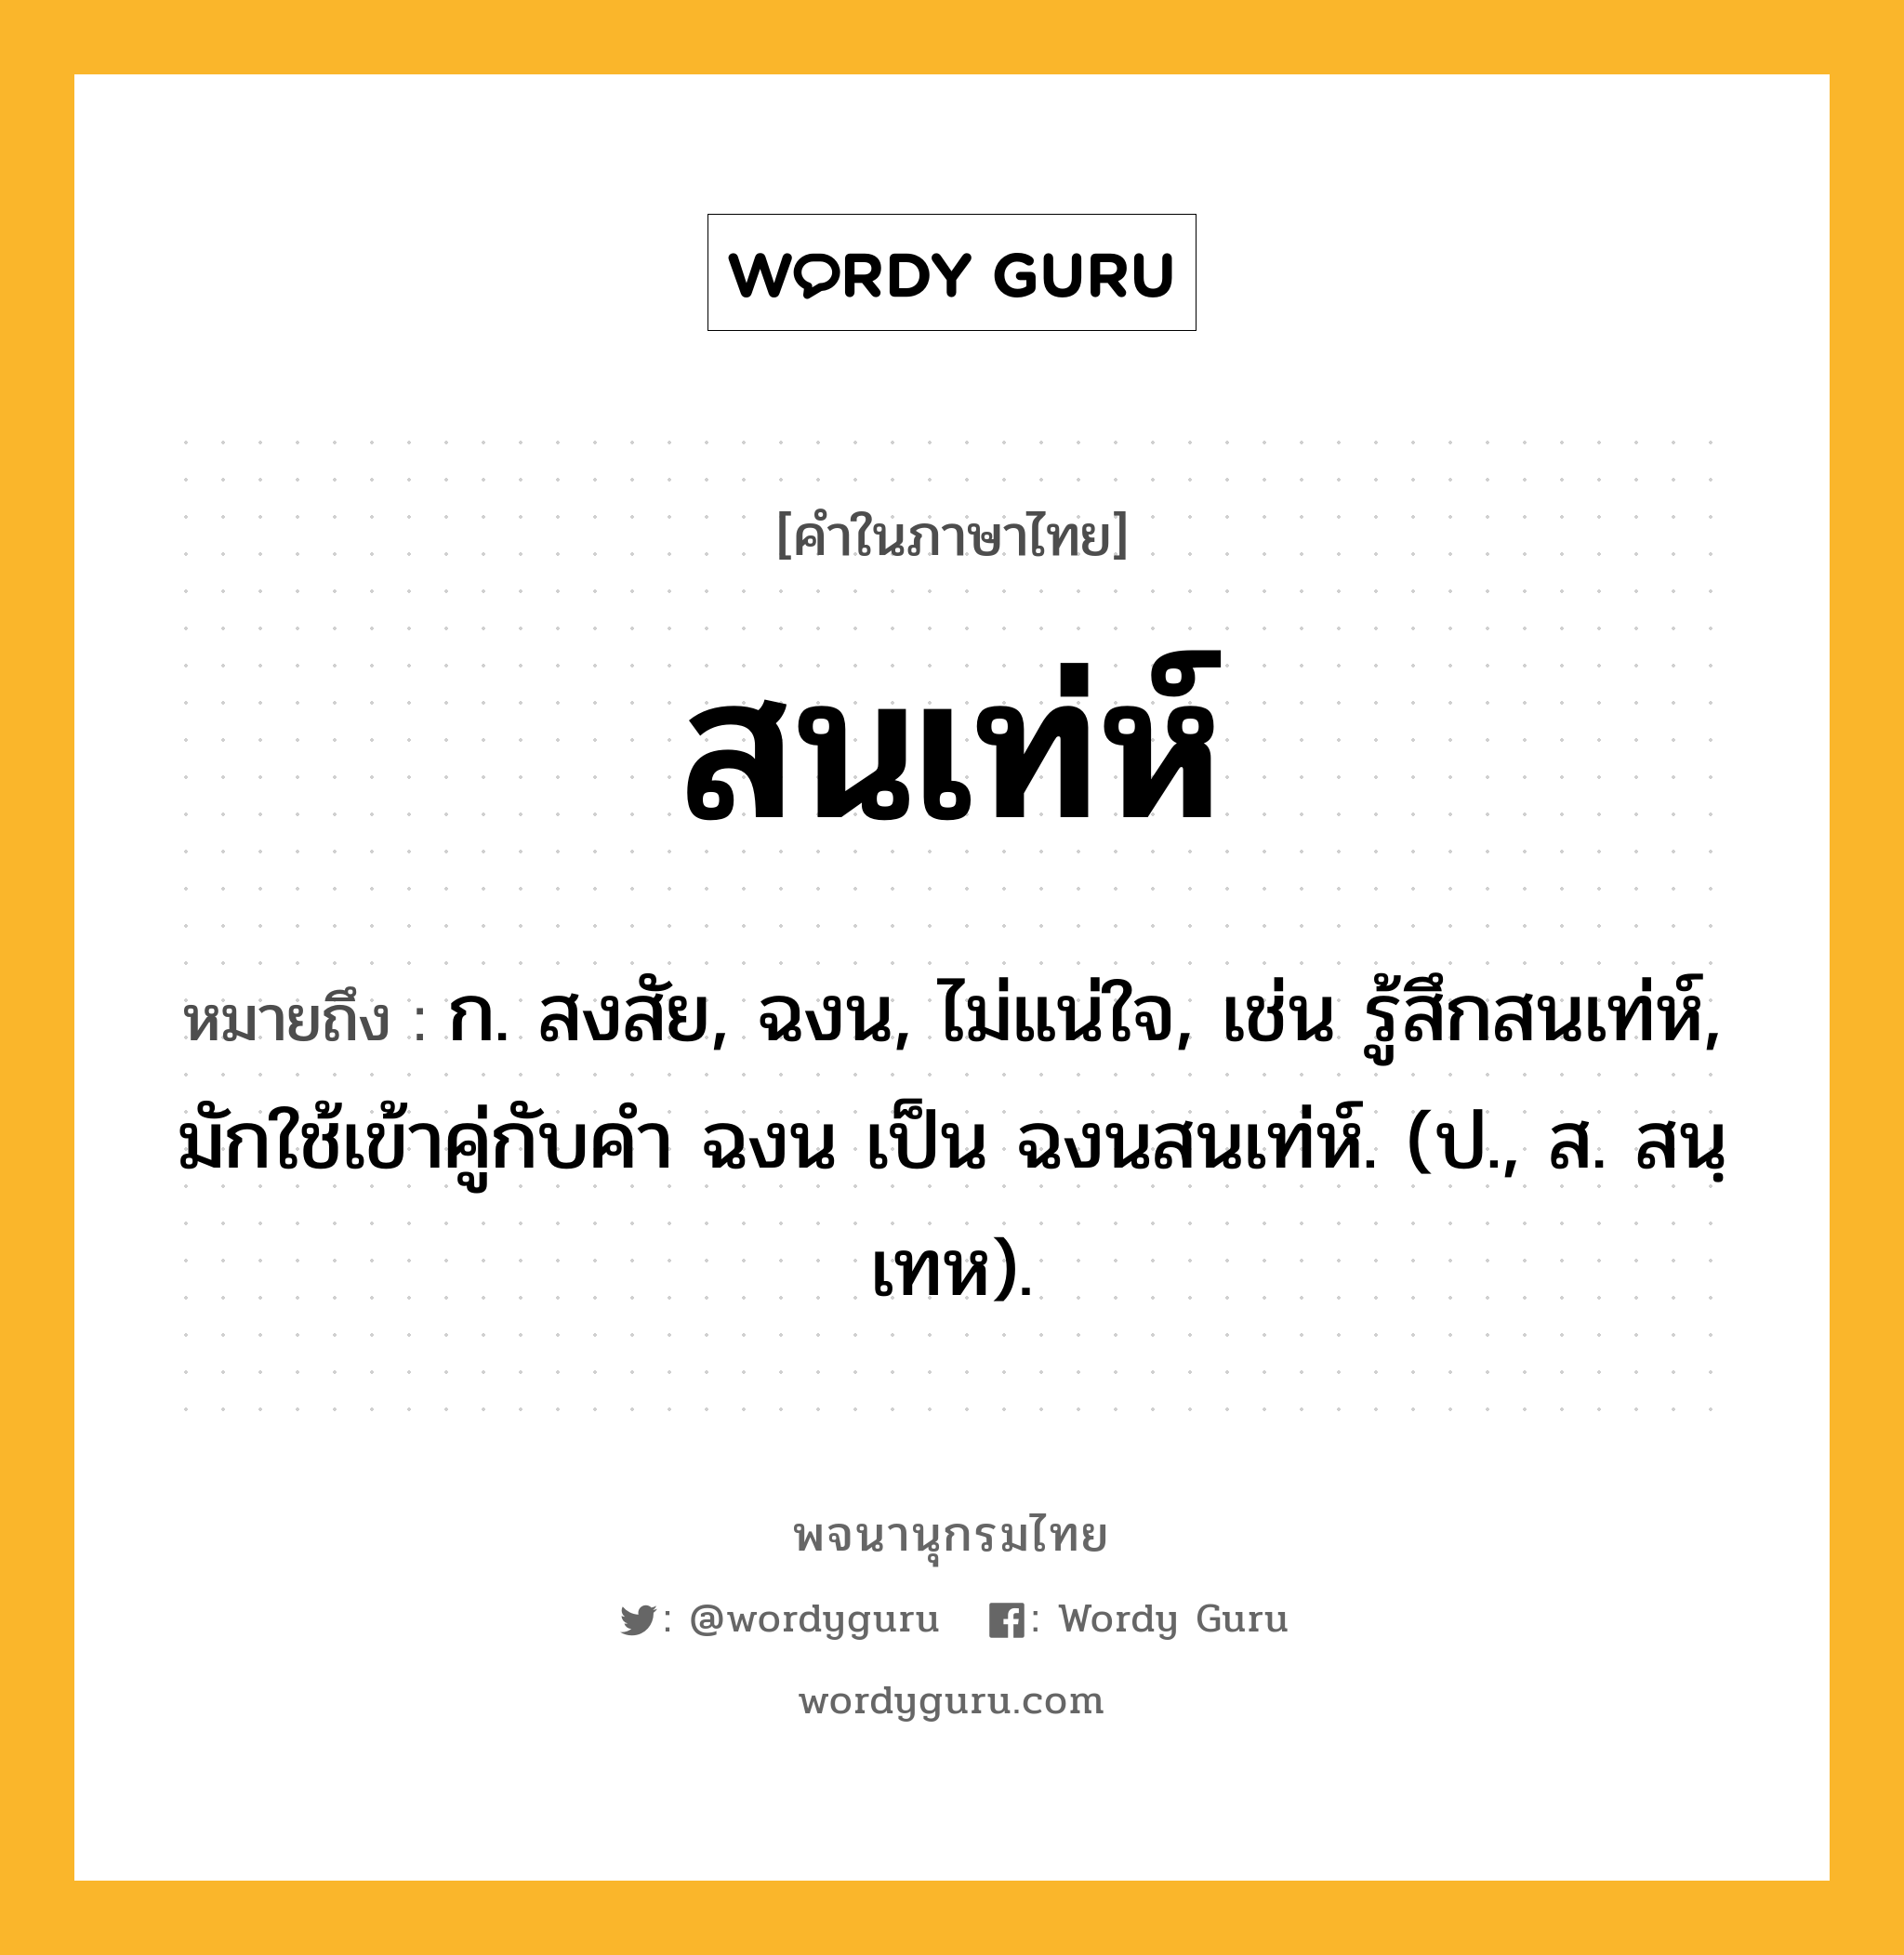 สนเท่ห์ หมายถึงอะไร?, คำในภาษาไทย สนเท่ห์ หมายถึง ก. สงสัย, ฉงน, ไม่แน่ใจ, เช่น รู้สึกสนเท่ห์, มักใช้เข้าคู่กับคำ ฉงน เป็น ฉงนสนเท่ห์. (ป., ส. สนฺเทห).